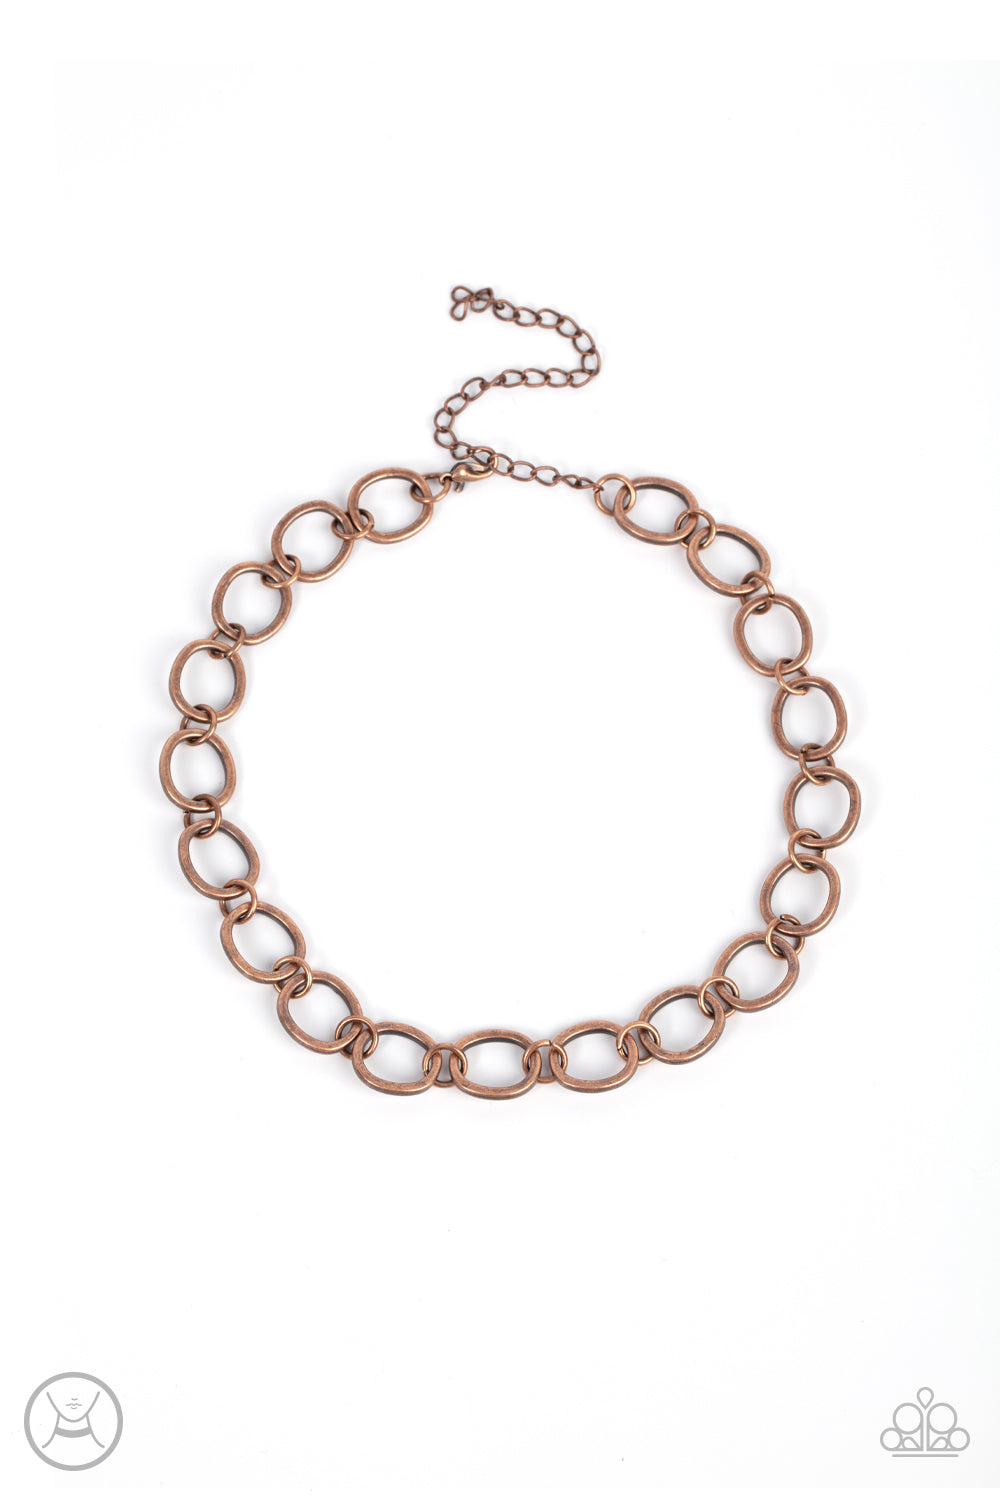 90s Nostalgia - Copper Choker Necklace Set - Princess Glam Shop